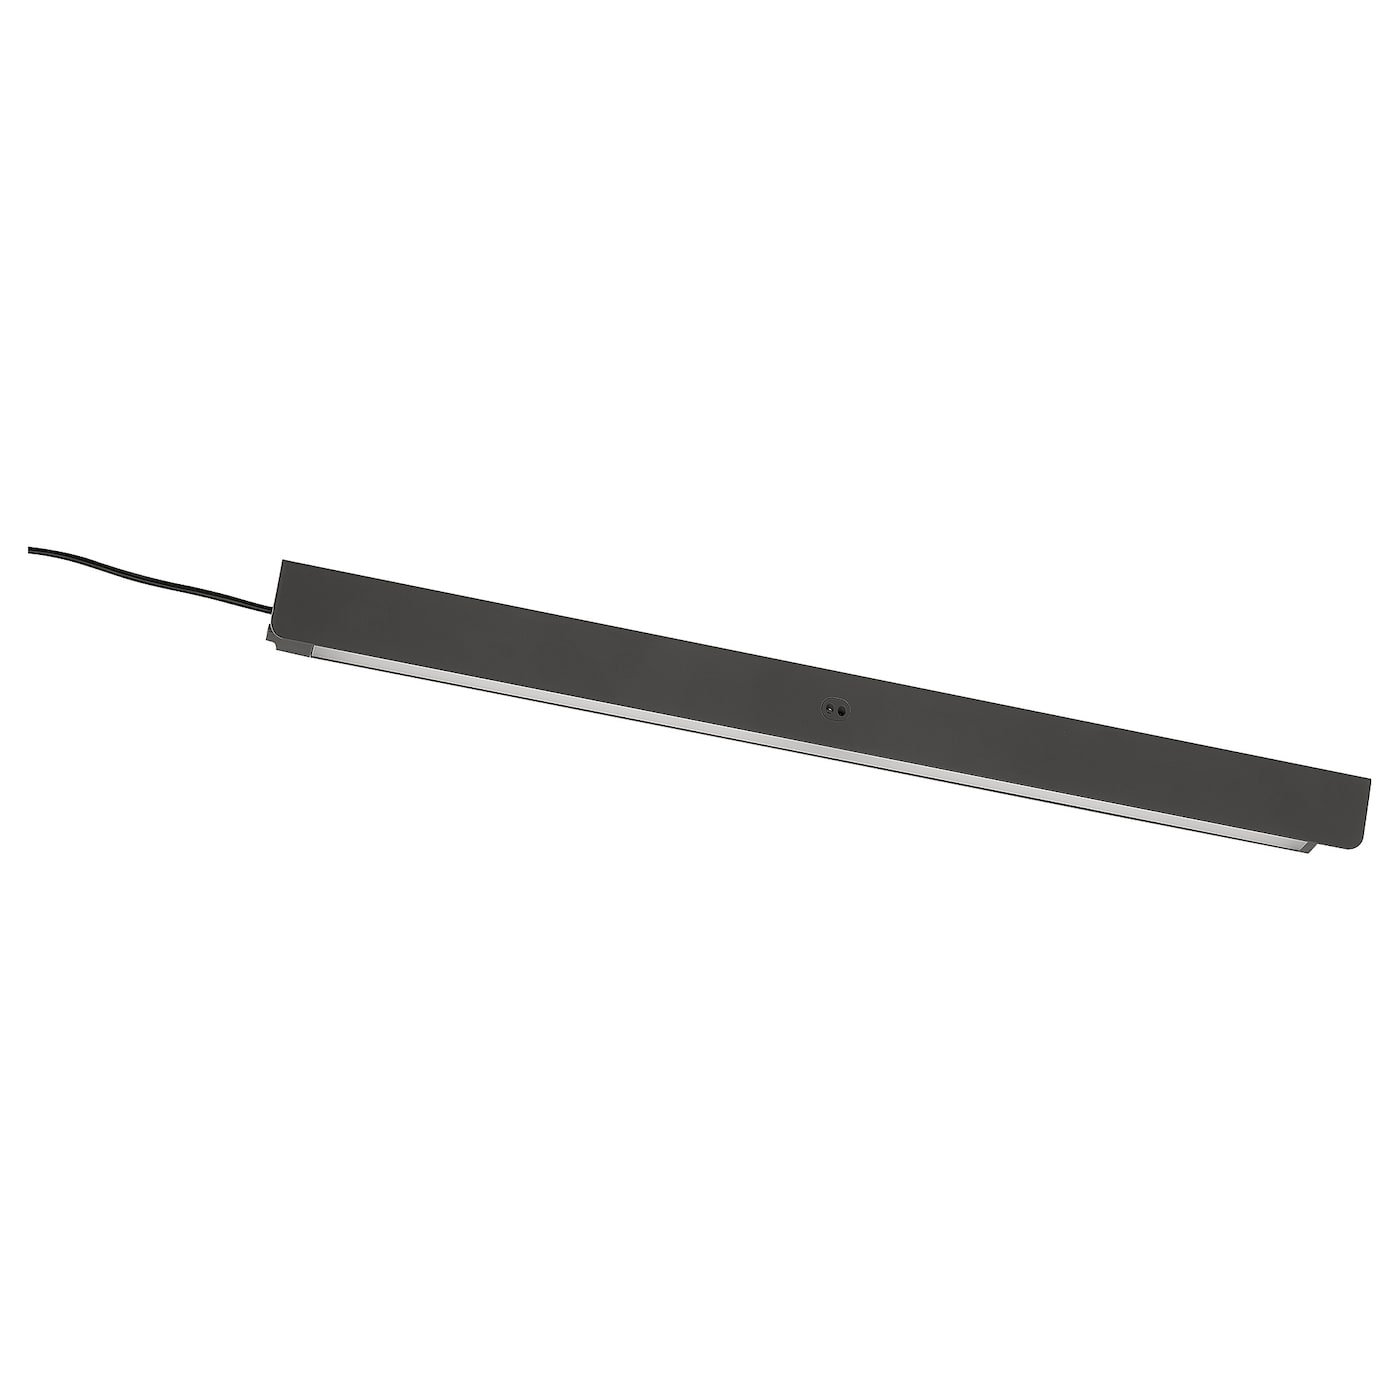 Светодиодное освещение шкафа с датчиком - IKEA ÖVERSIDAN/OVERSIDAN/ОВЕРСИДАН ИКЕА, 46 см, черный